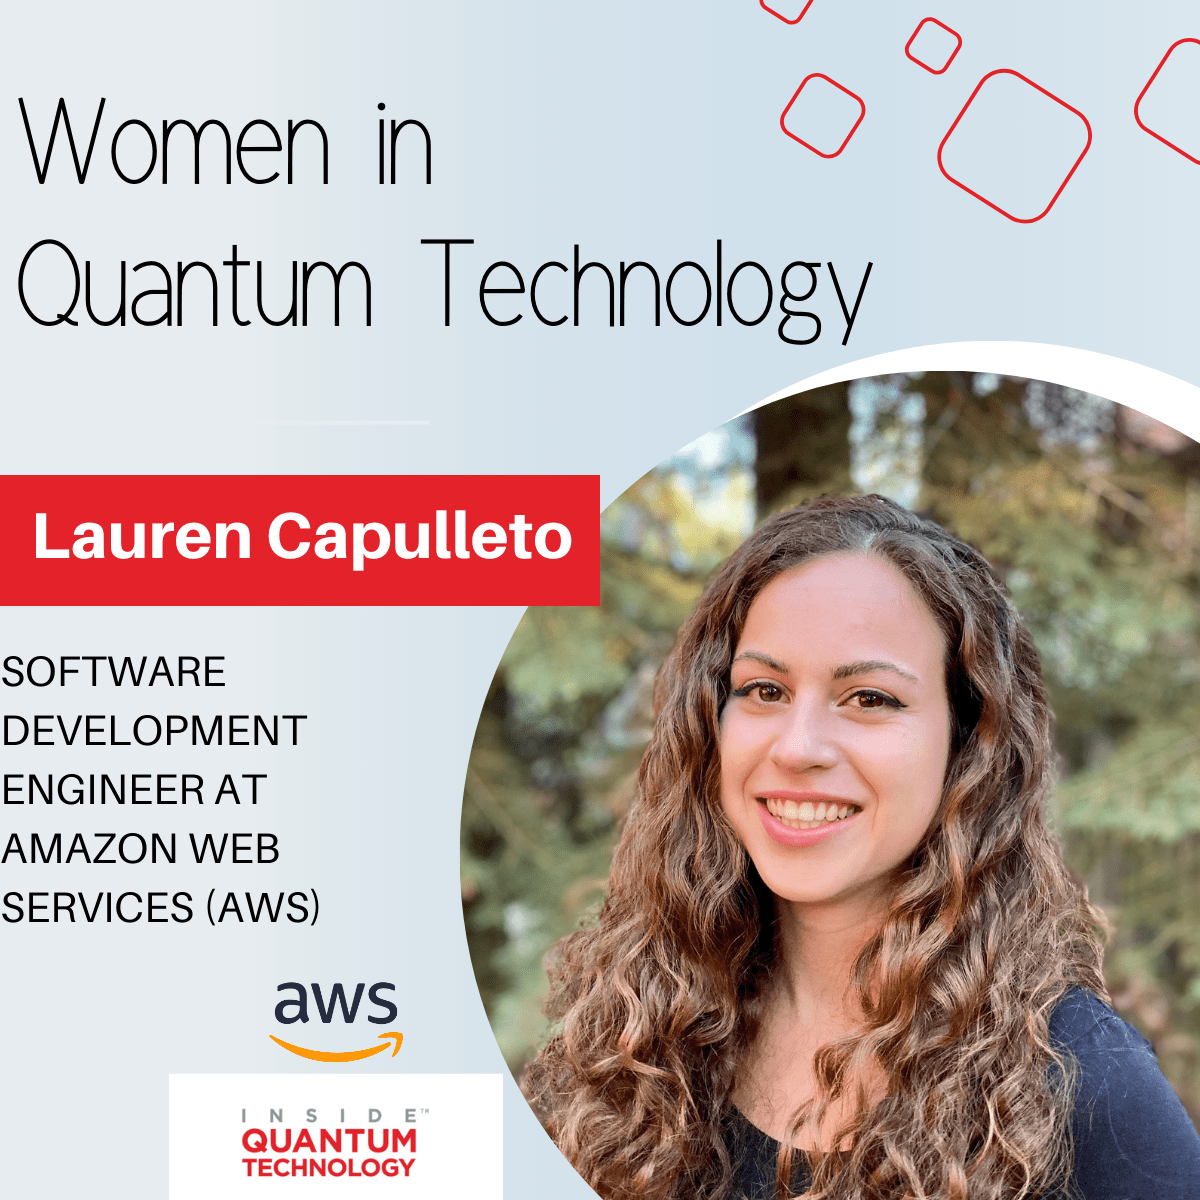 Lauren Capulleto, programvareutviklingsingeniør hos Amazon Web Services (AWS) forteller historien sin om å gå inn i kvanteindustrien.